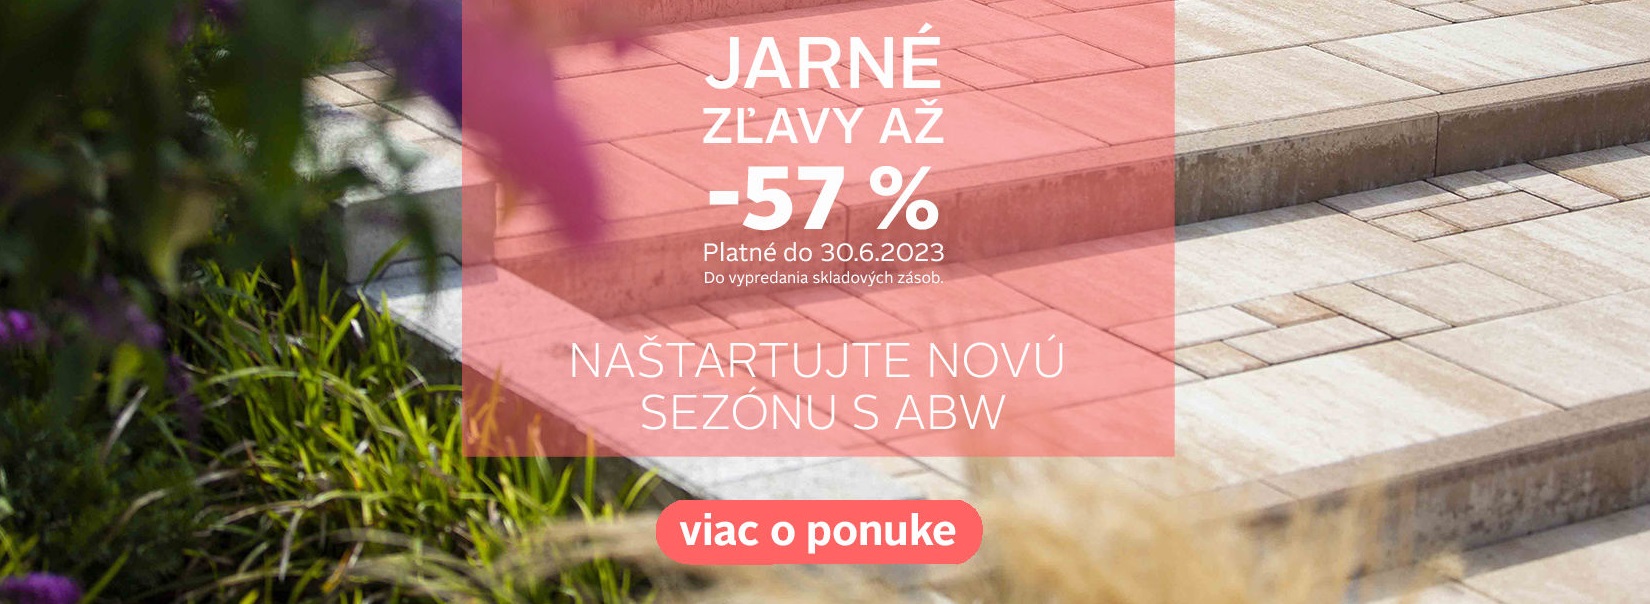 banner jarne zlavy 2023 01 46